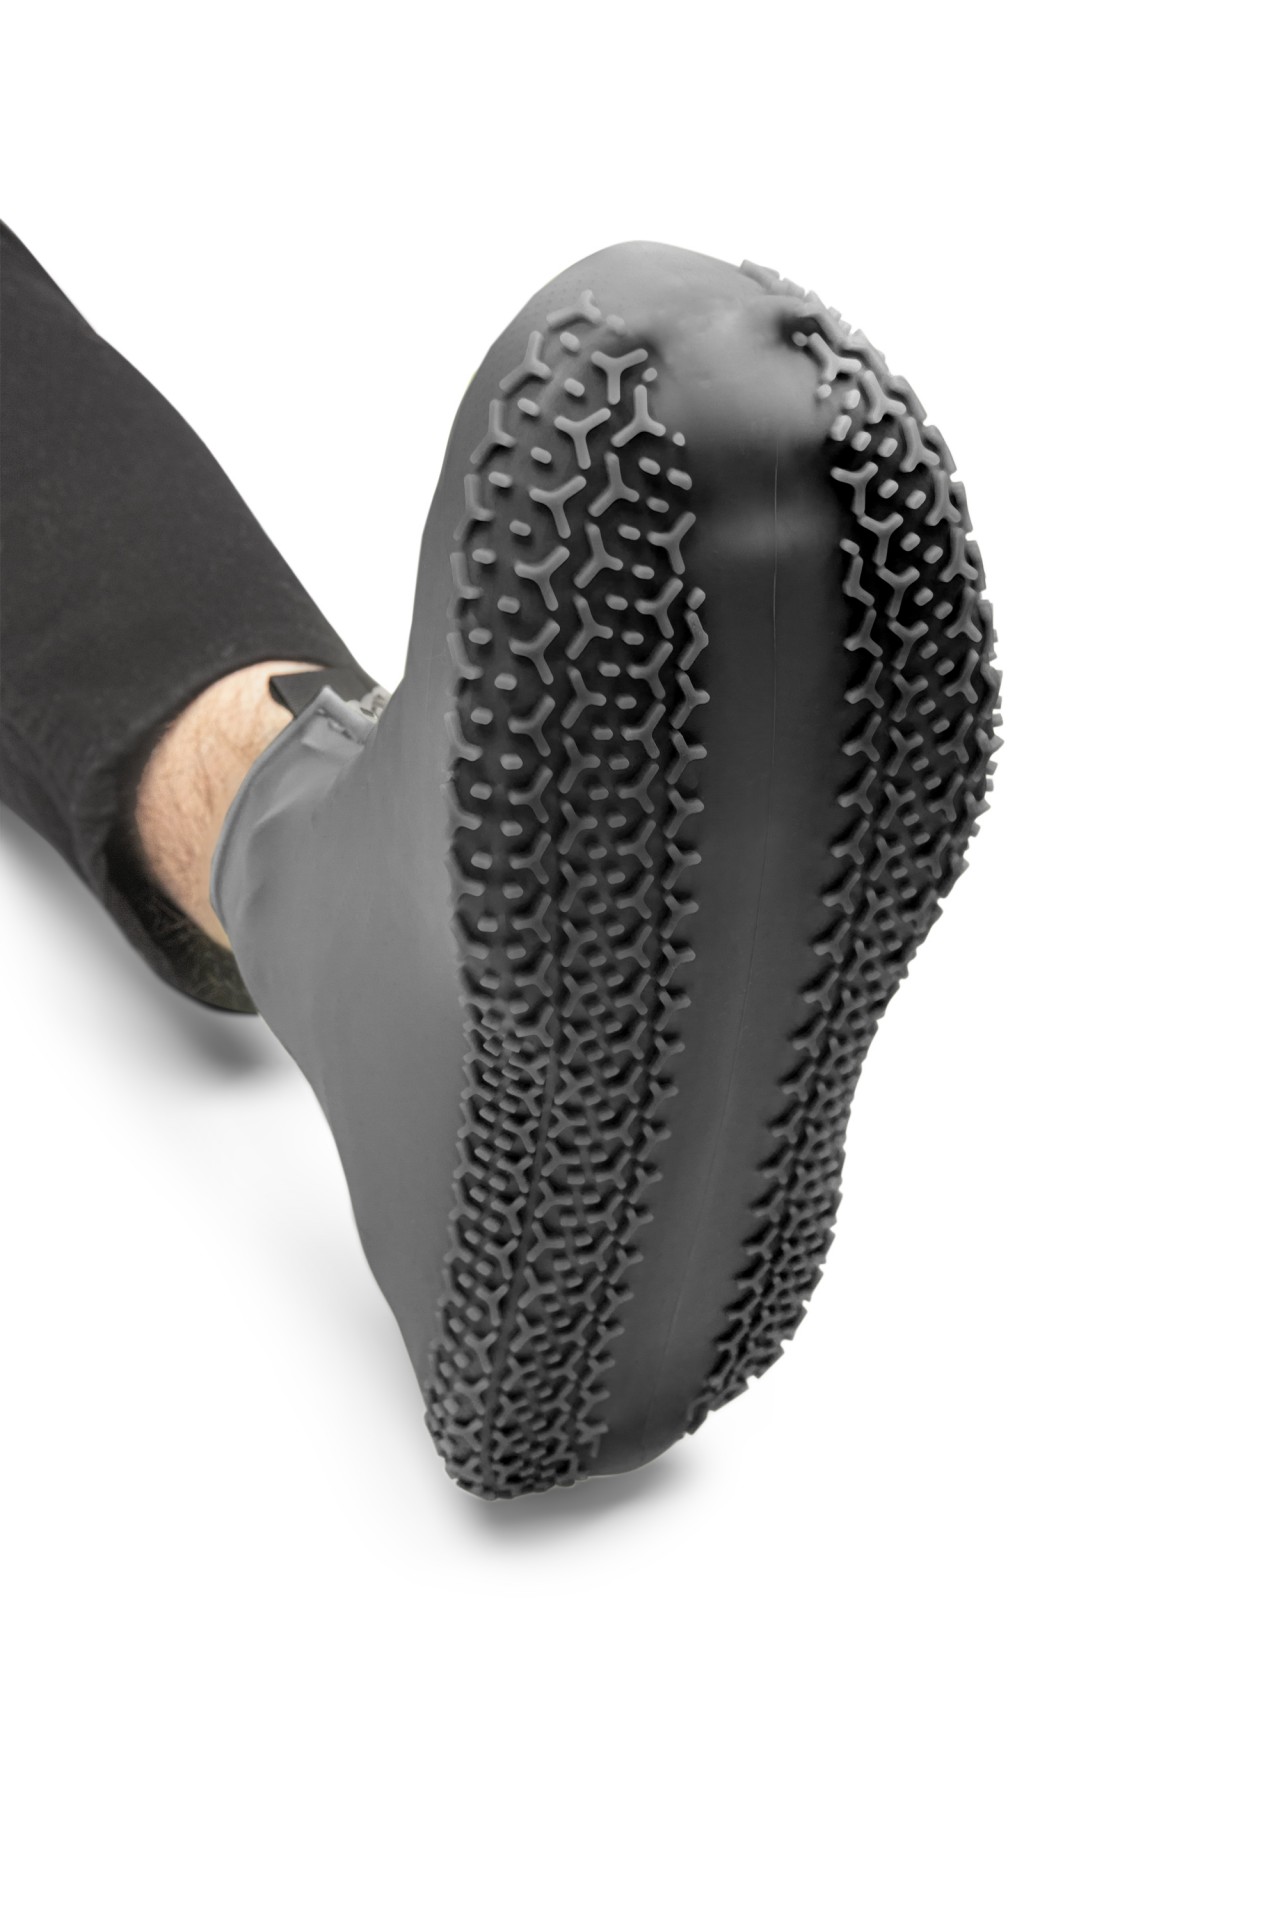 Couverture de chaussure en silicone imperméable, Fabricant de broderies